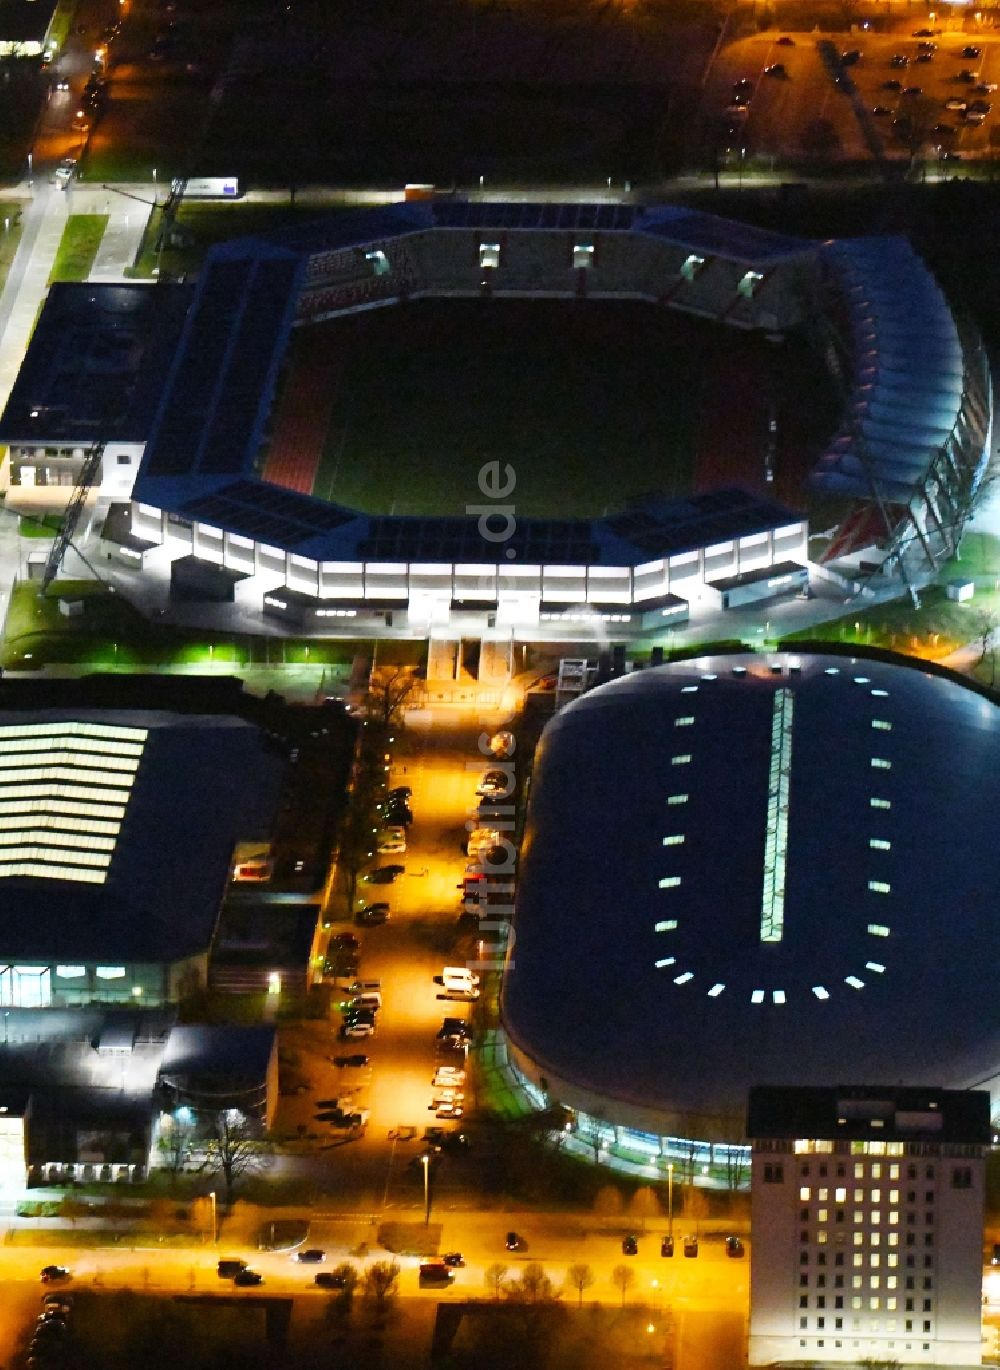 Nacht-Luftaufnahme Erfurt - Nachtluftbild der Arena des Stadion Steigerwaldstadion,des Eissportzentrum Erfurt und der Leichtathletikhalle Erfurt in Erfurt im Bundesland Thüringen